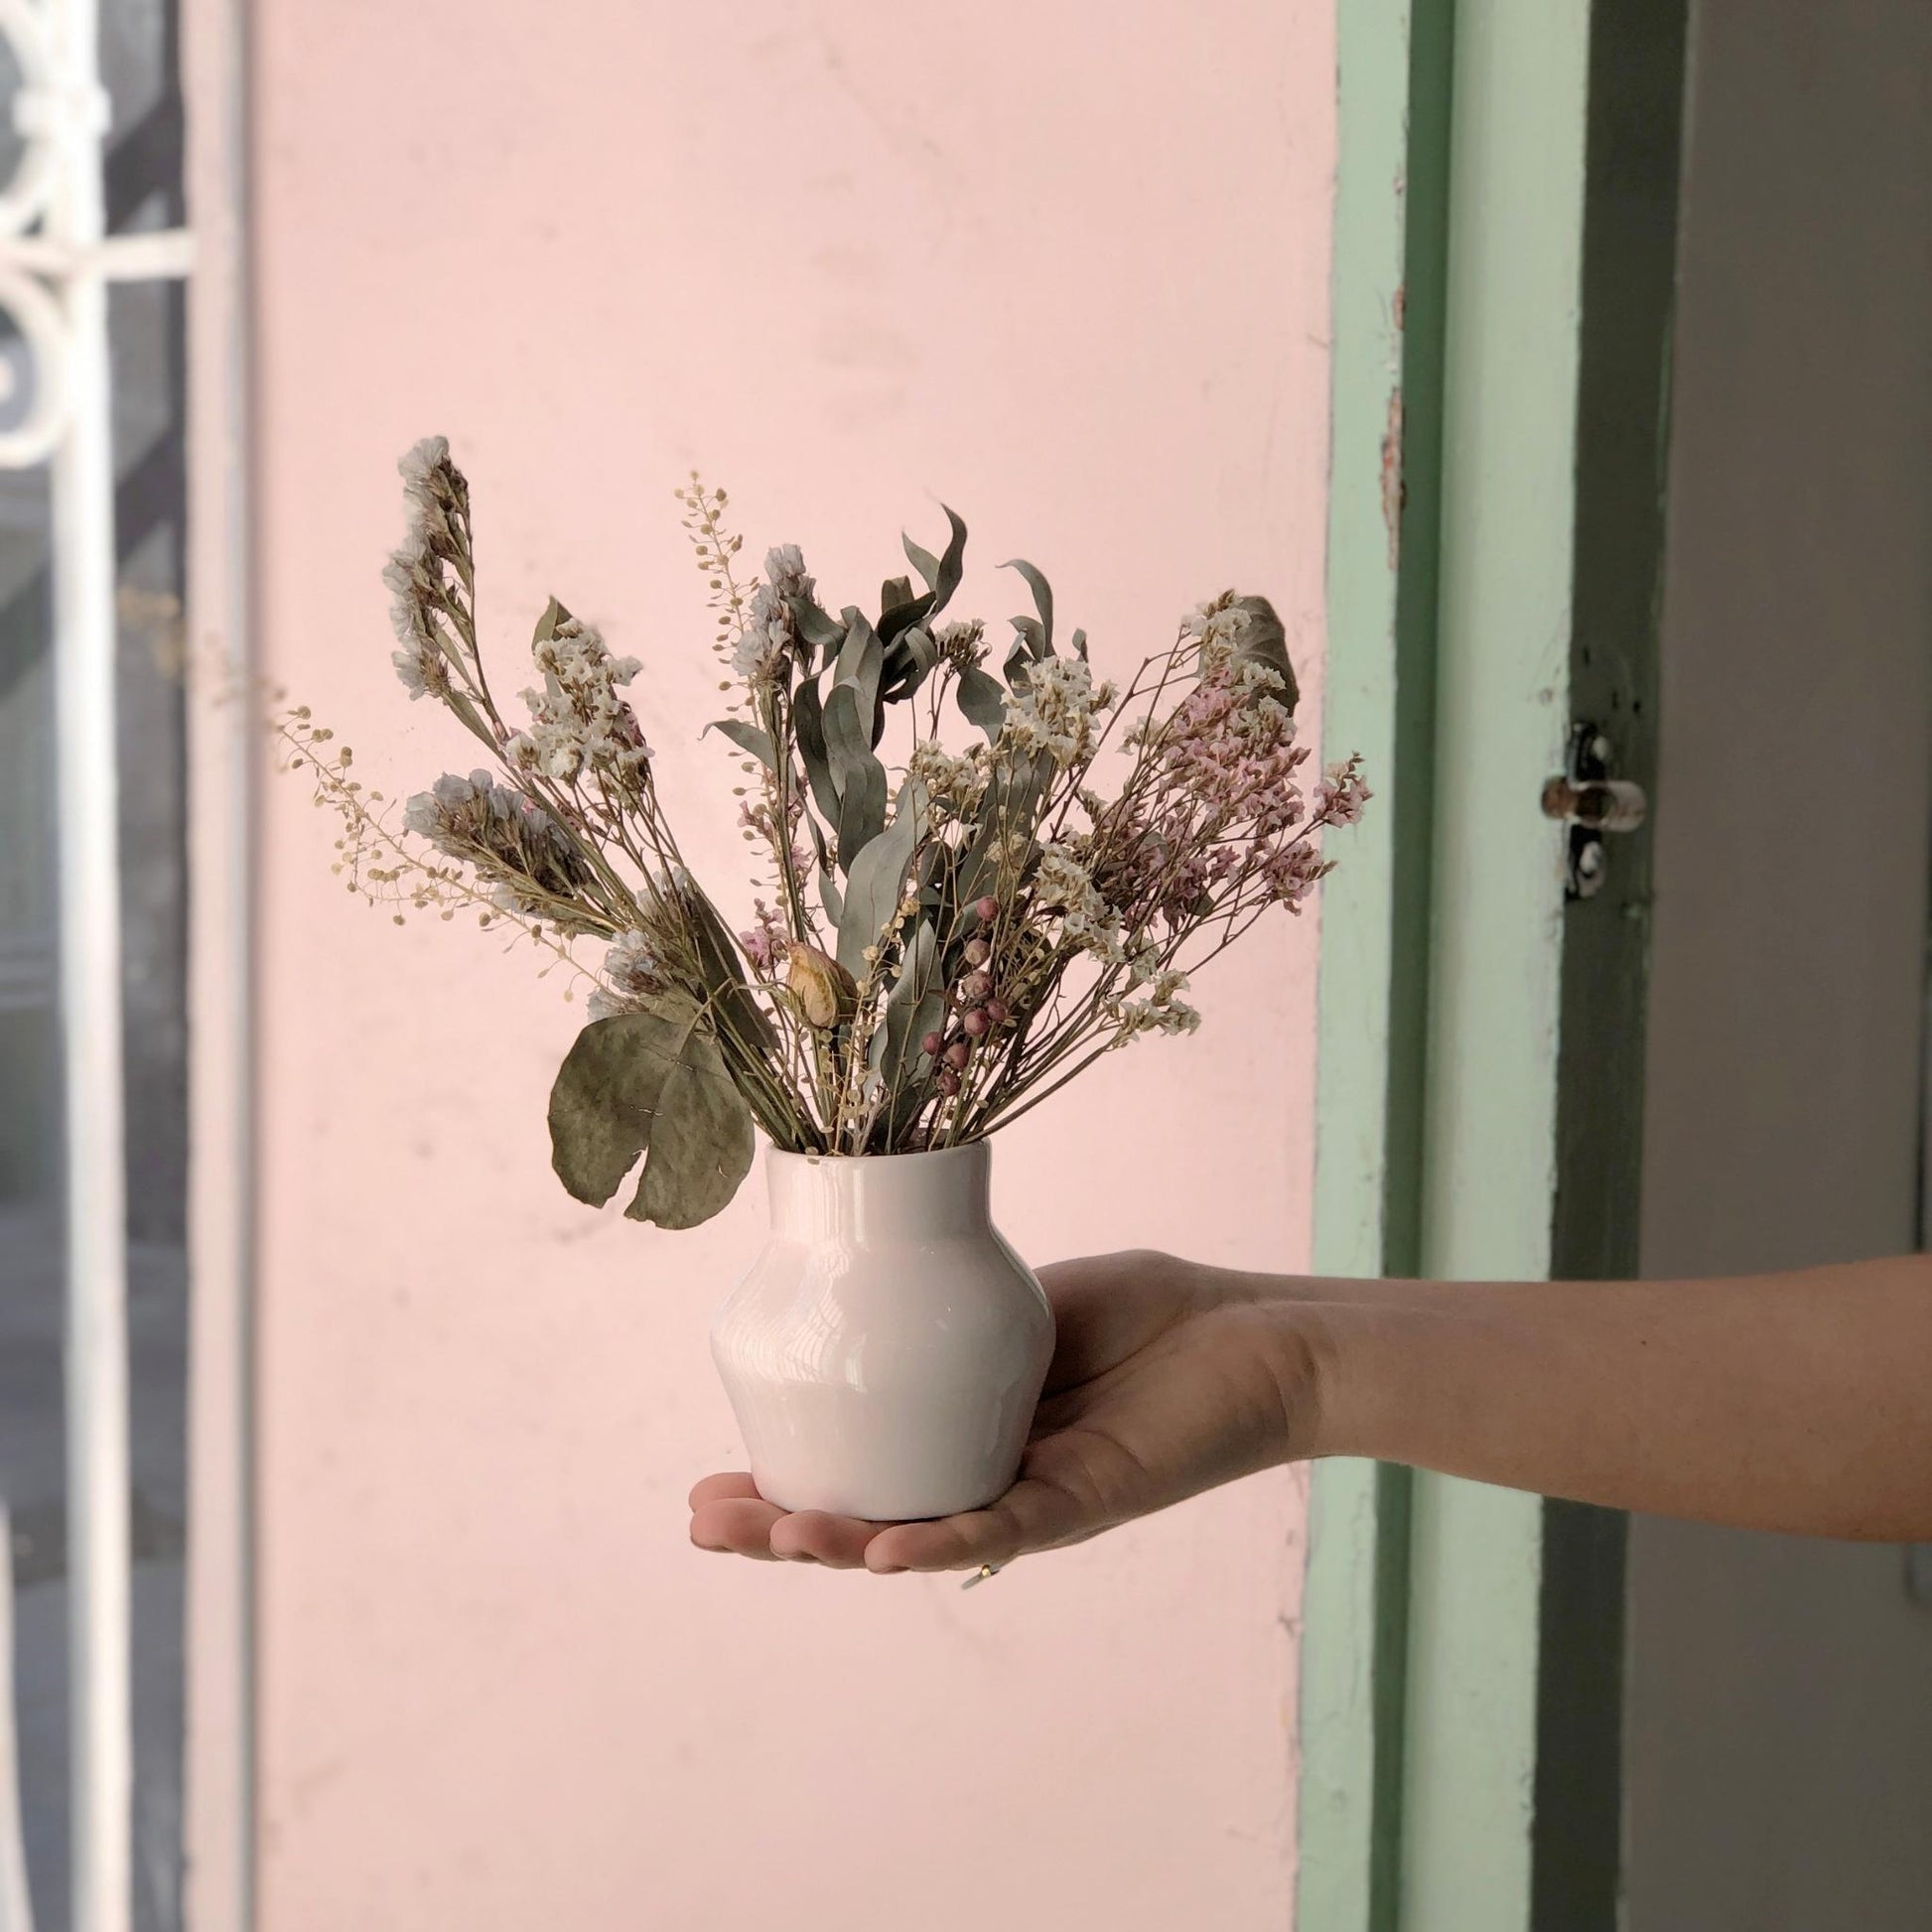 Florerito hecho artesanalmente a mano con cerámica con flores secas de larga duración